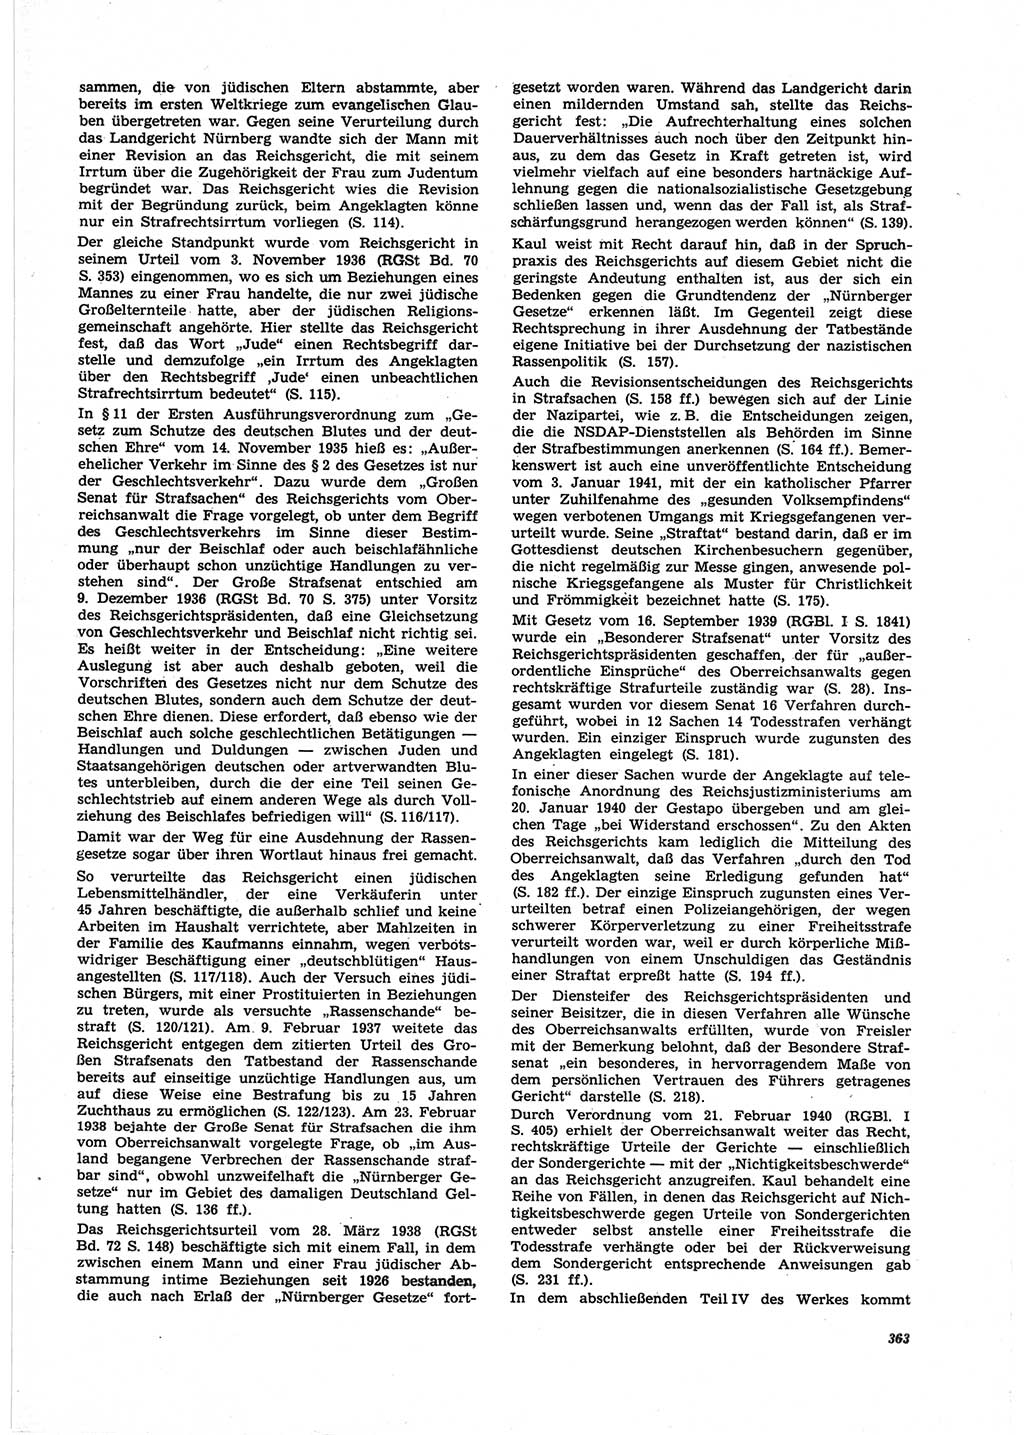 Neue Justiz (NJ), Zeitschrift für Recht und Rechtswissenschaft [Deutsche Demokratische Republik (DDR)], 25. Jahrgang 1971, Seite 363 (NJ DDR 1971, S. 363)